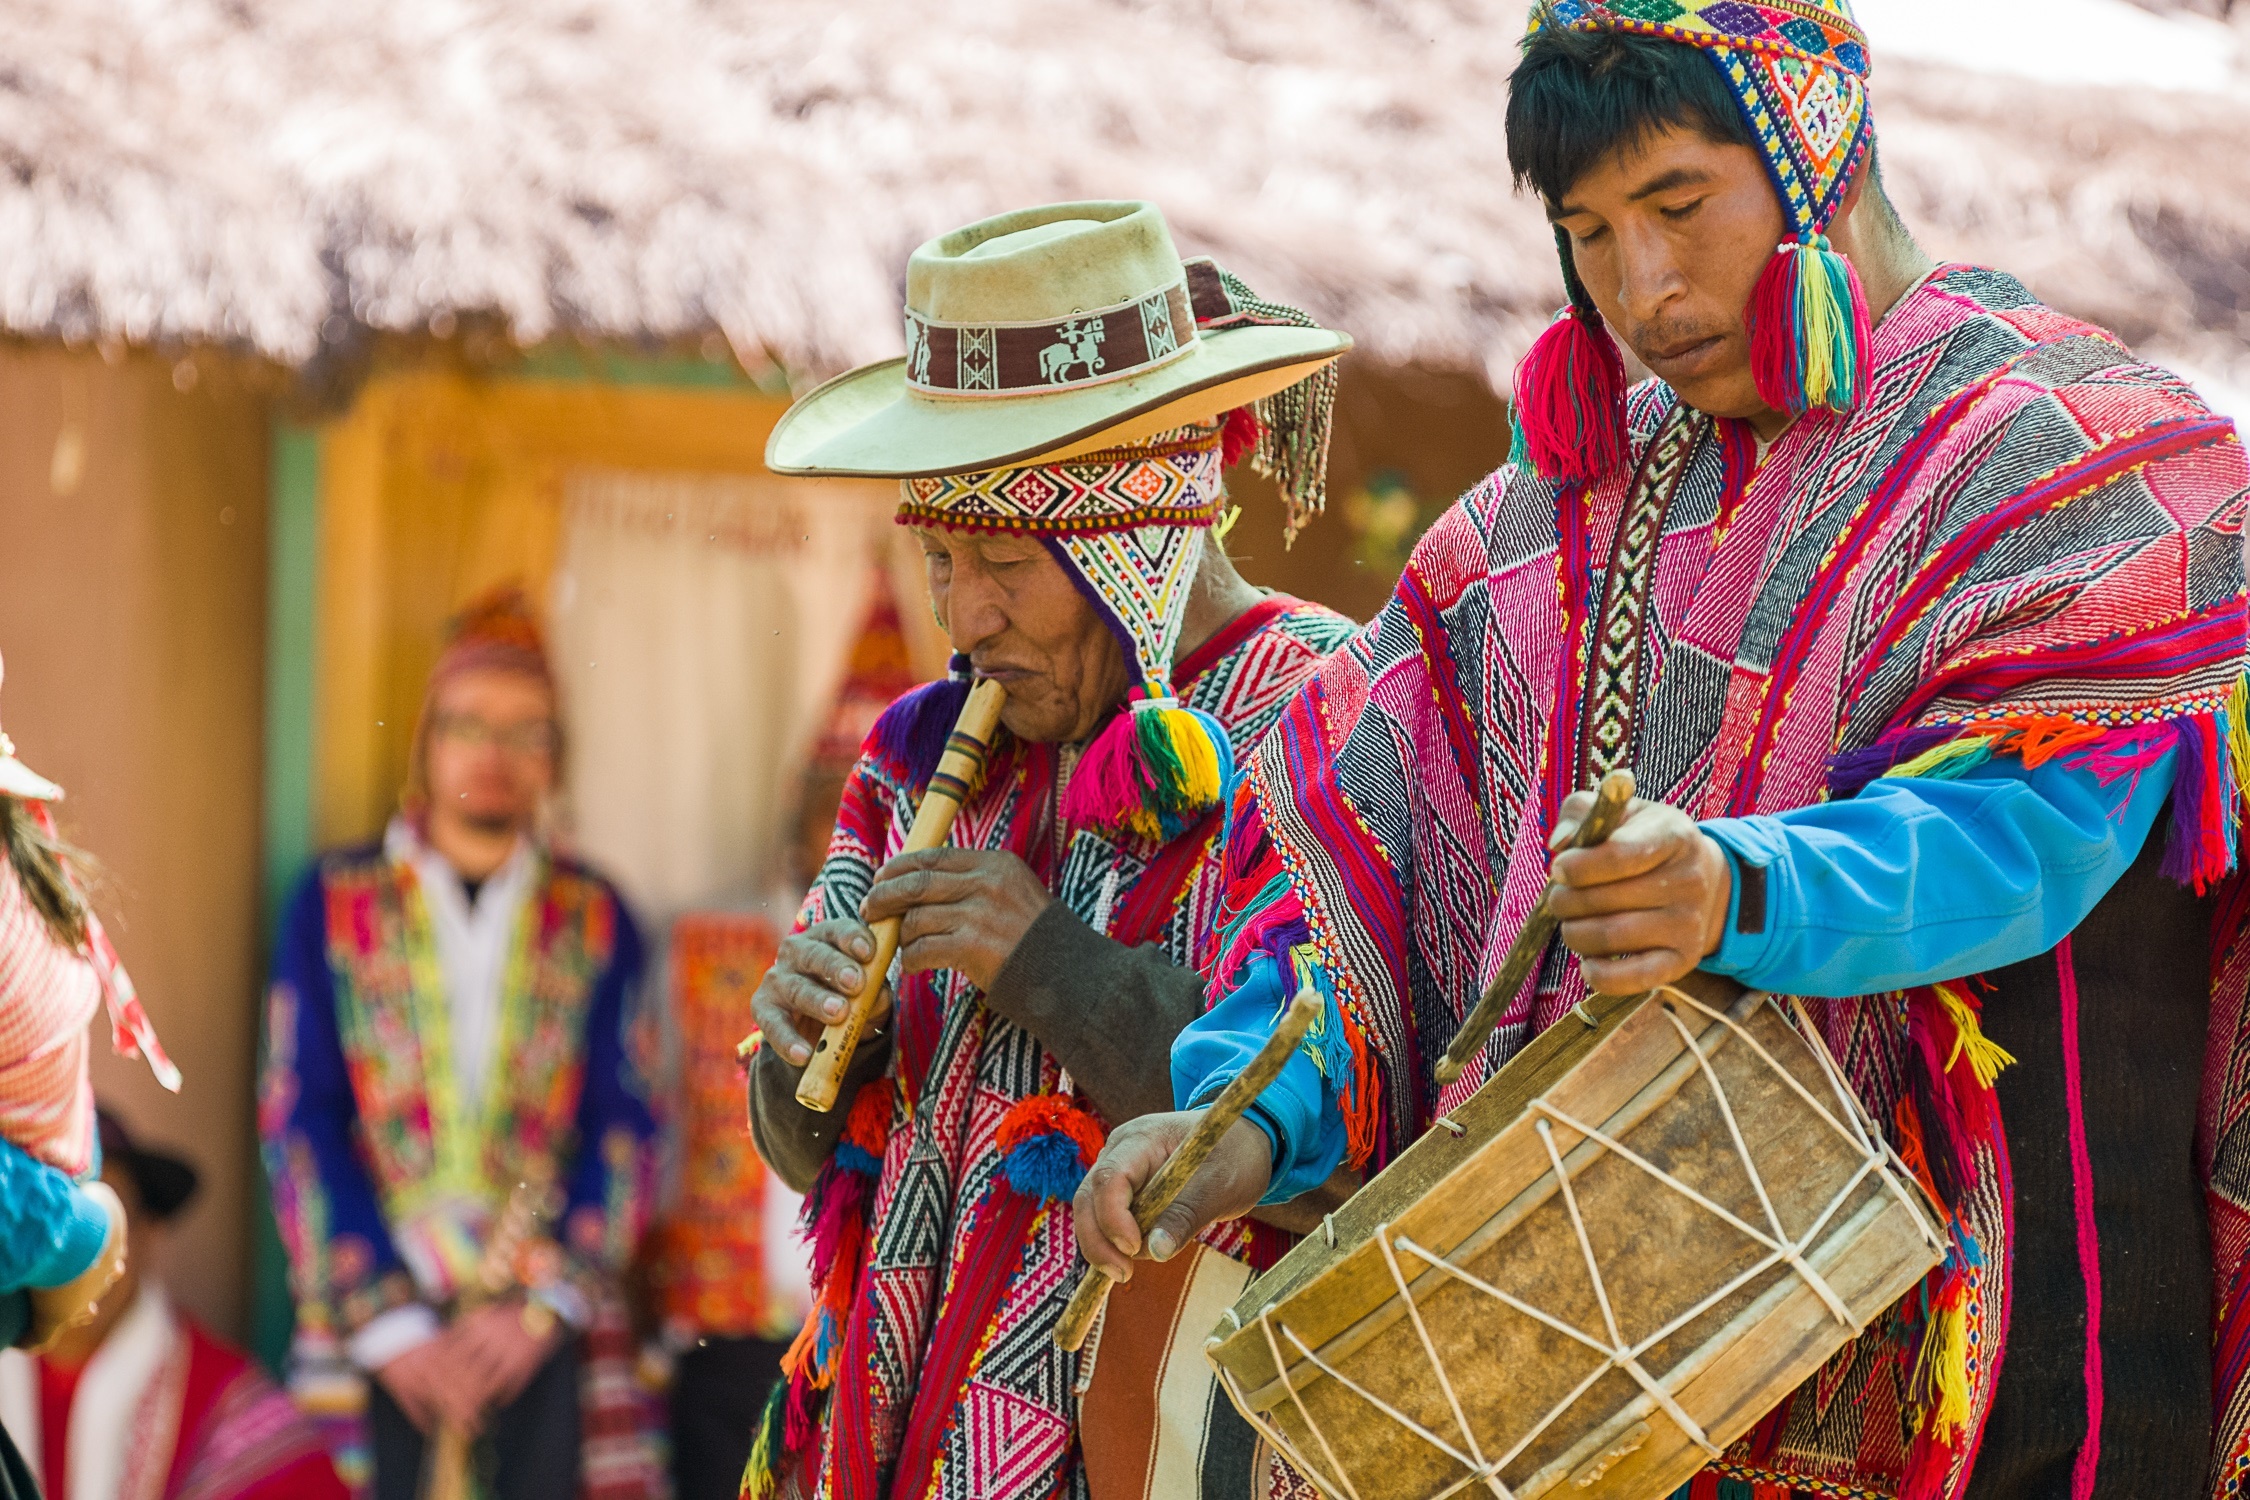 Flötenspieler und Trommler in traditioneller Kleidung der Anden